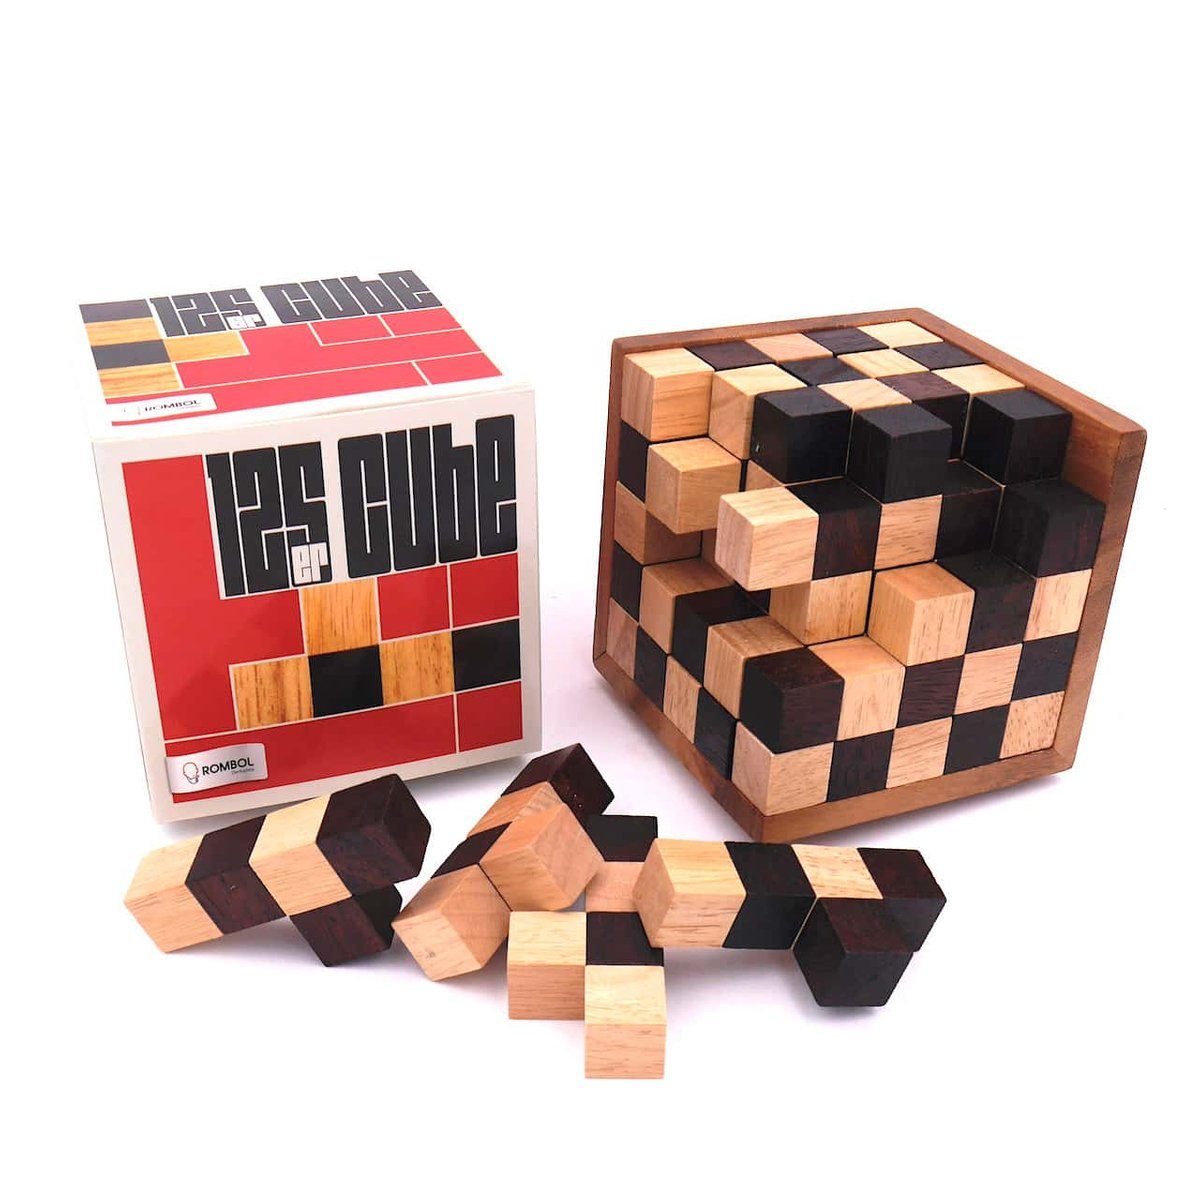 ROMBOL Denkspiele Spiel, 3D-Puzzle 125er-Cube - herausforderndes Denkspiel aus edlem Holz für Knobel-Fans, Holzspiel